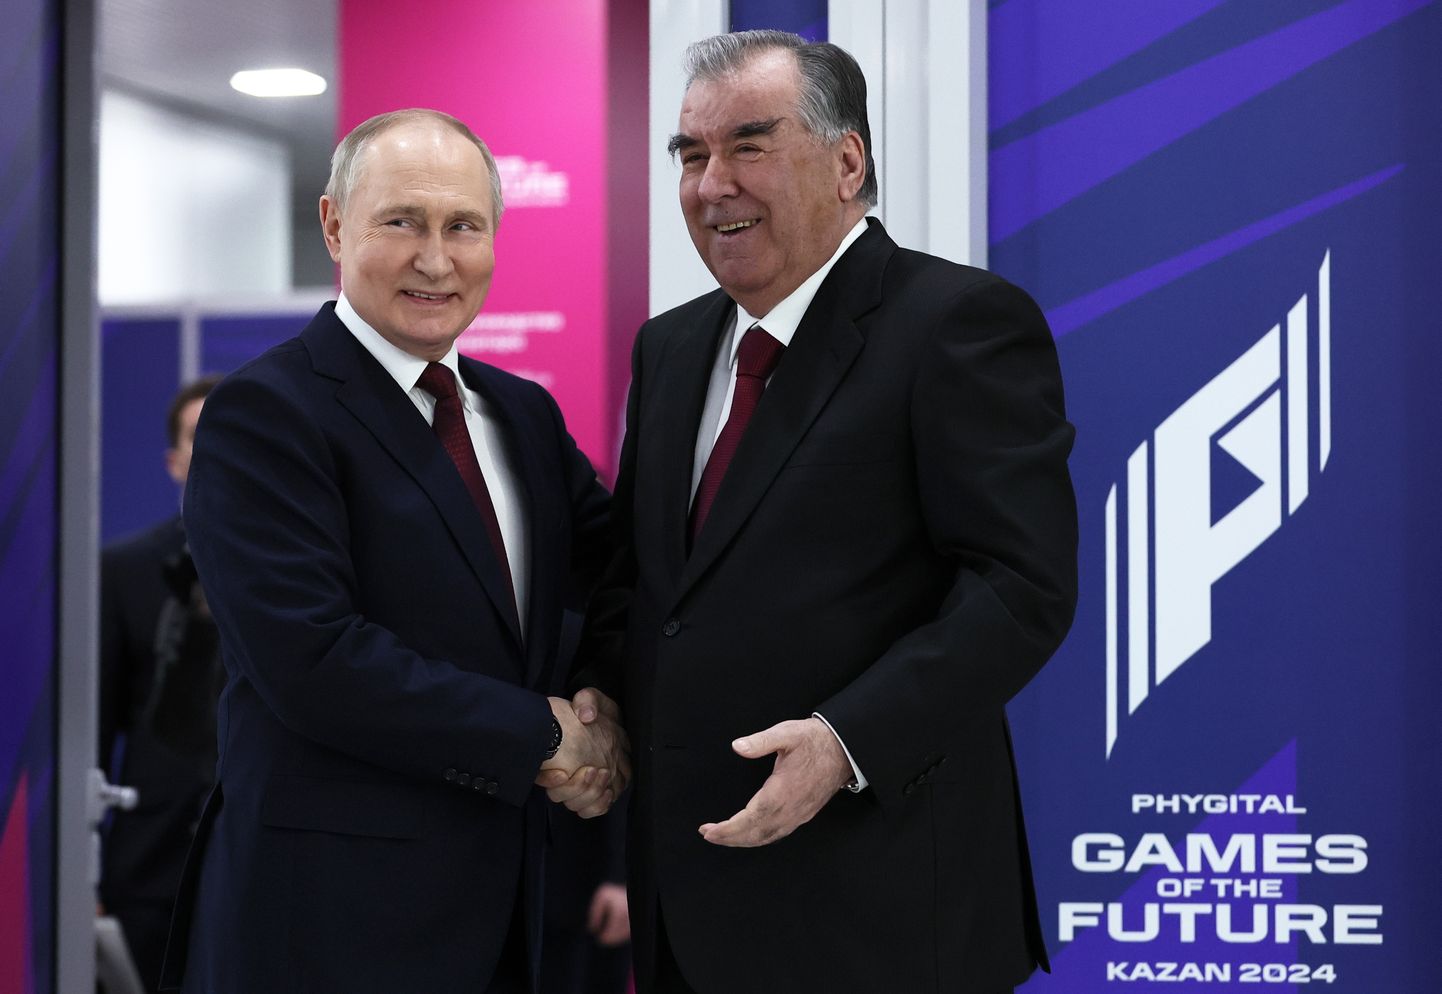 Путин и несменяемый президент Таджикистана Эмомали Рахмон приветствуют друг друга в Казани на чемпионате по фиджитал играм. Участие спортсменов из Эстонии в этом чемпионате, который прошел под патронатом Путина, вызвало скандал в феврале 2024 года.